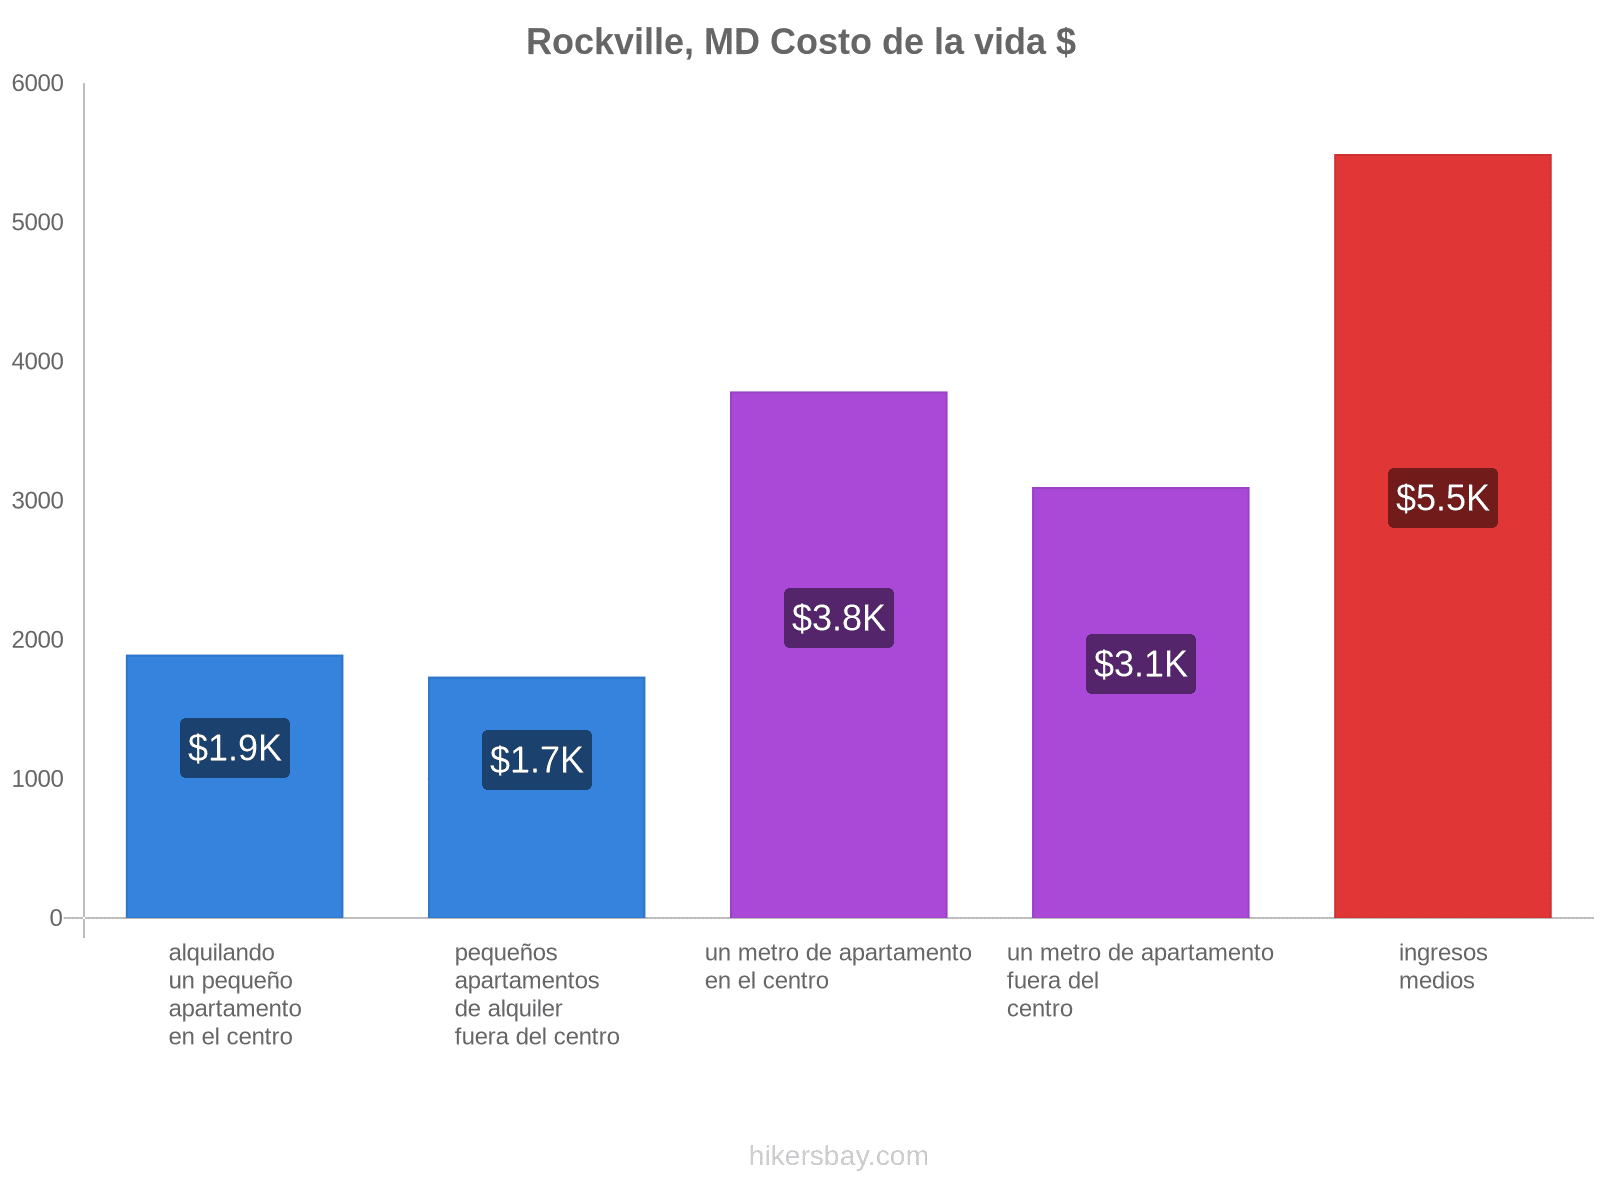 Rockville, MD costo de la vida hikersbay.com